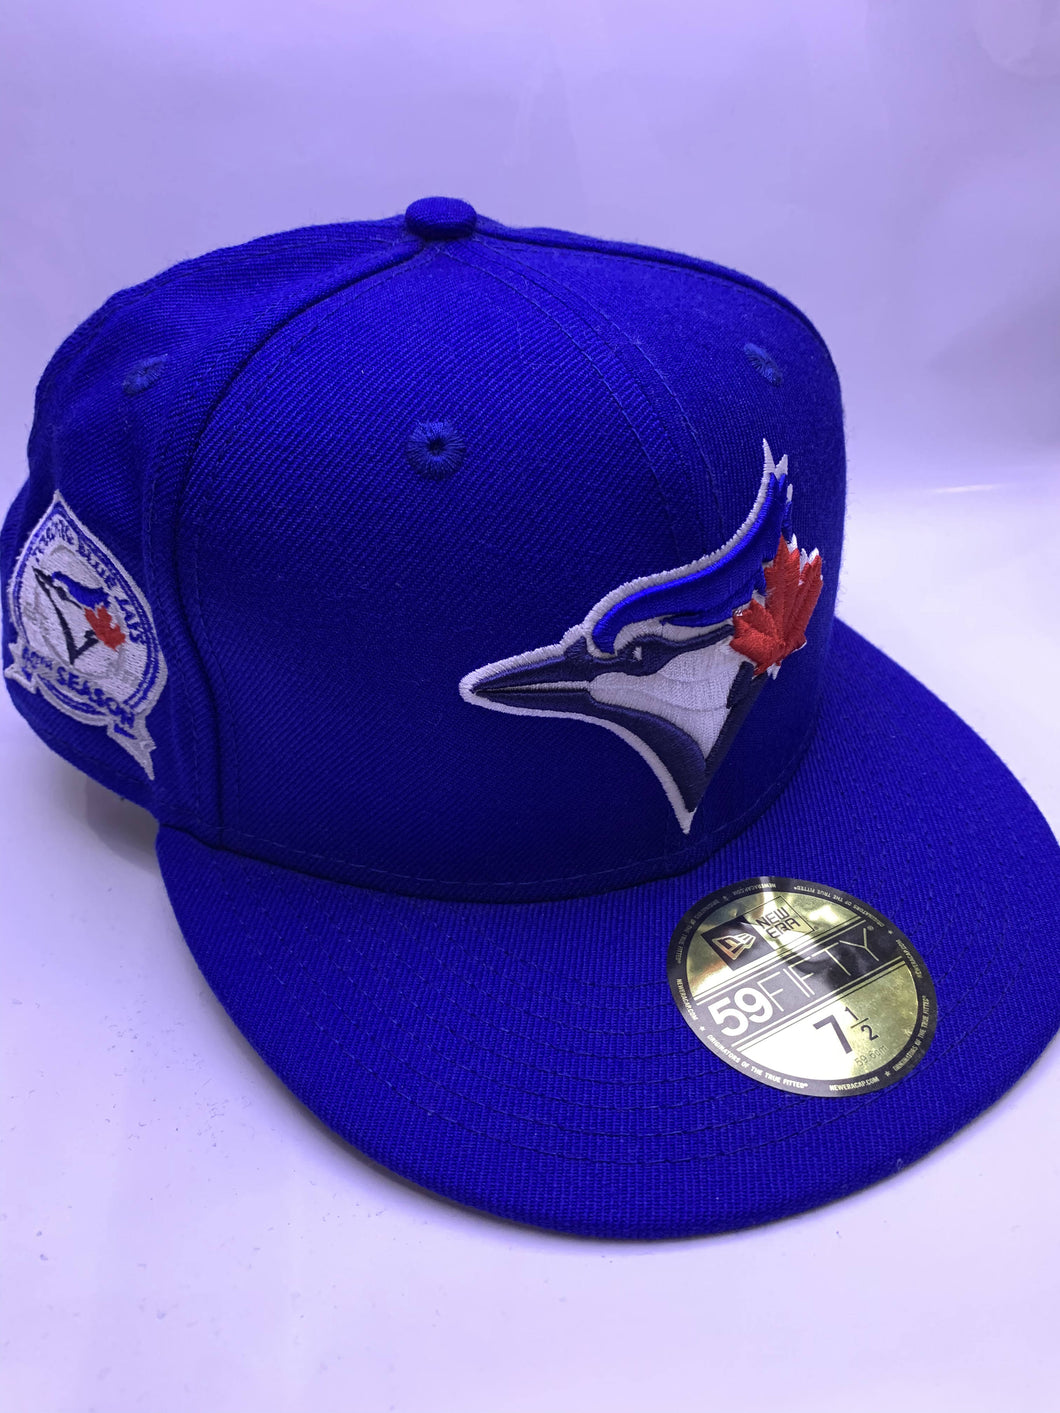 MLB Toronto Blue Jays New Era 40 YEARS ANNIVERSARY fitted cap